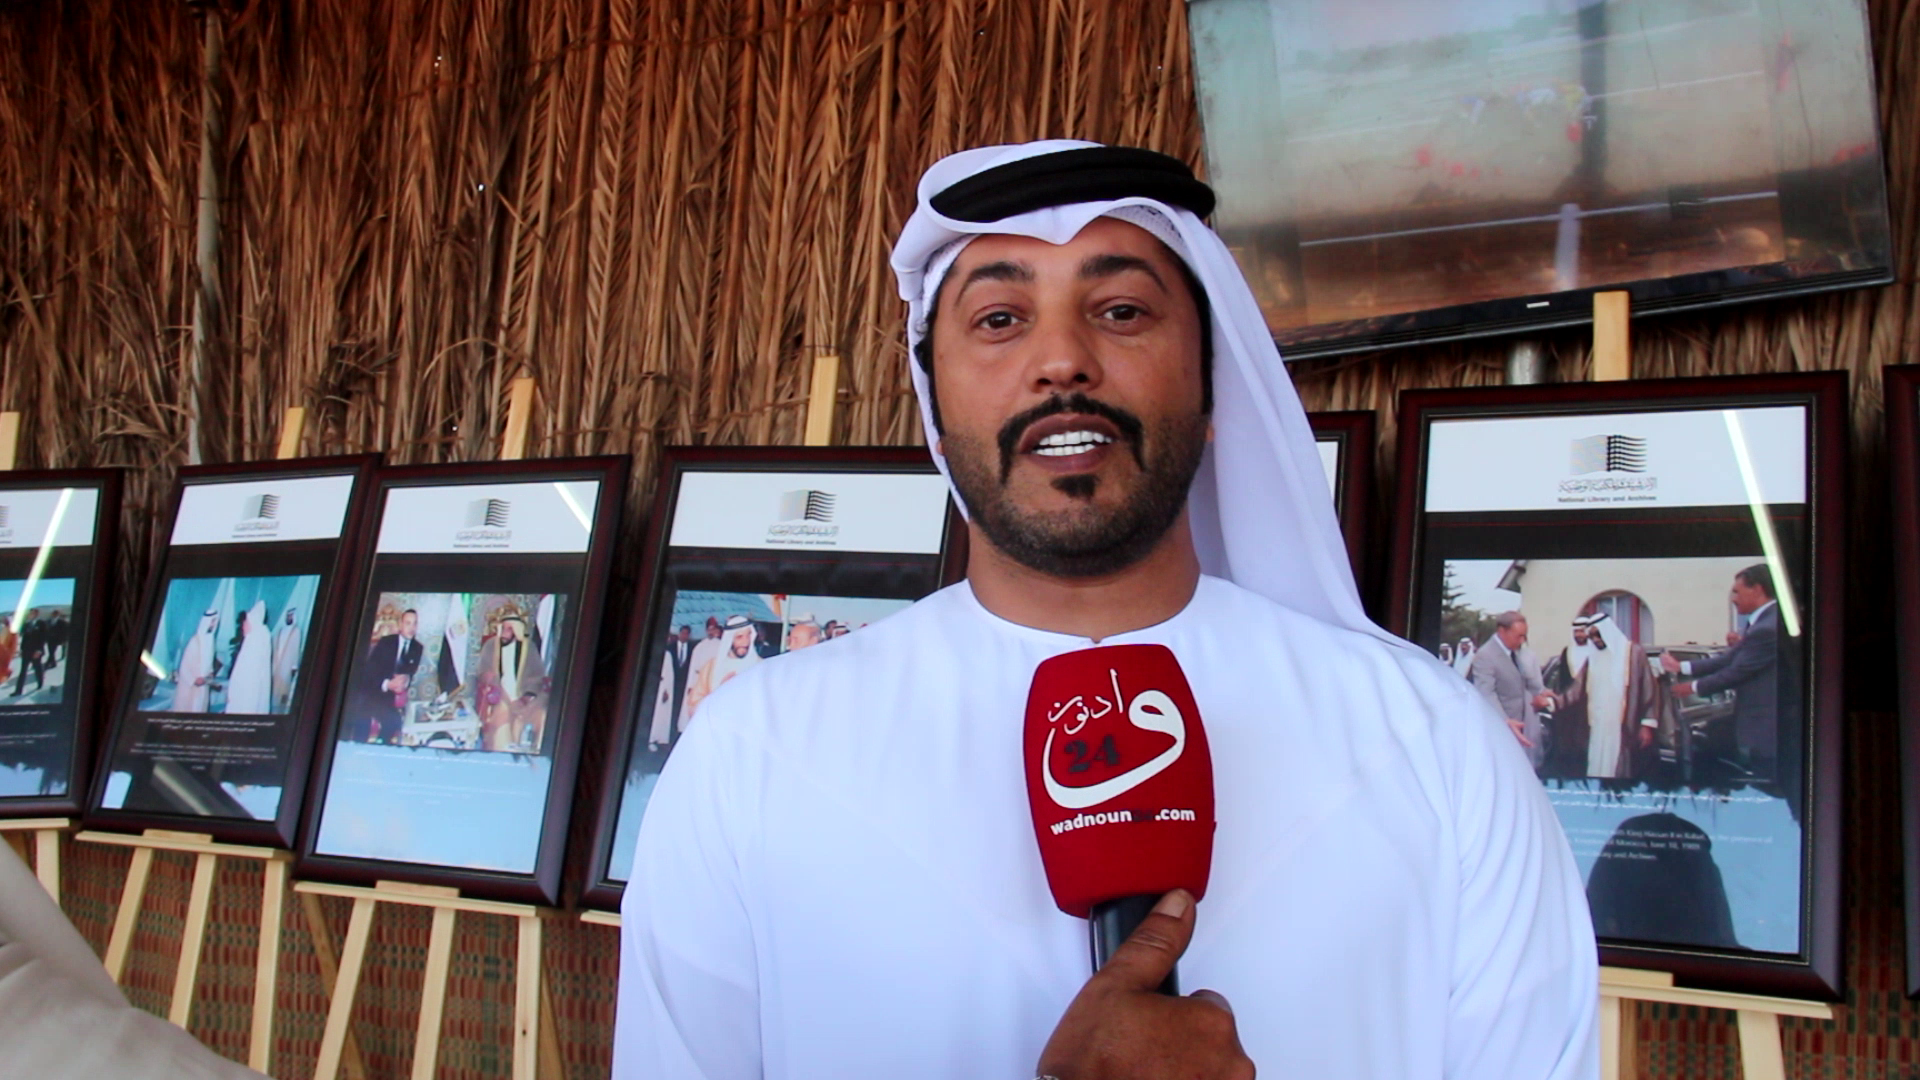 حمد الزعابي عن أرشيف الإمارات العربية، يتحدث عن العلاقات المغربية الإماراتية